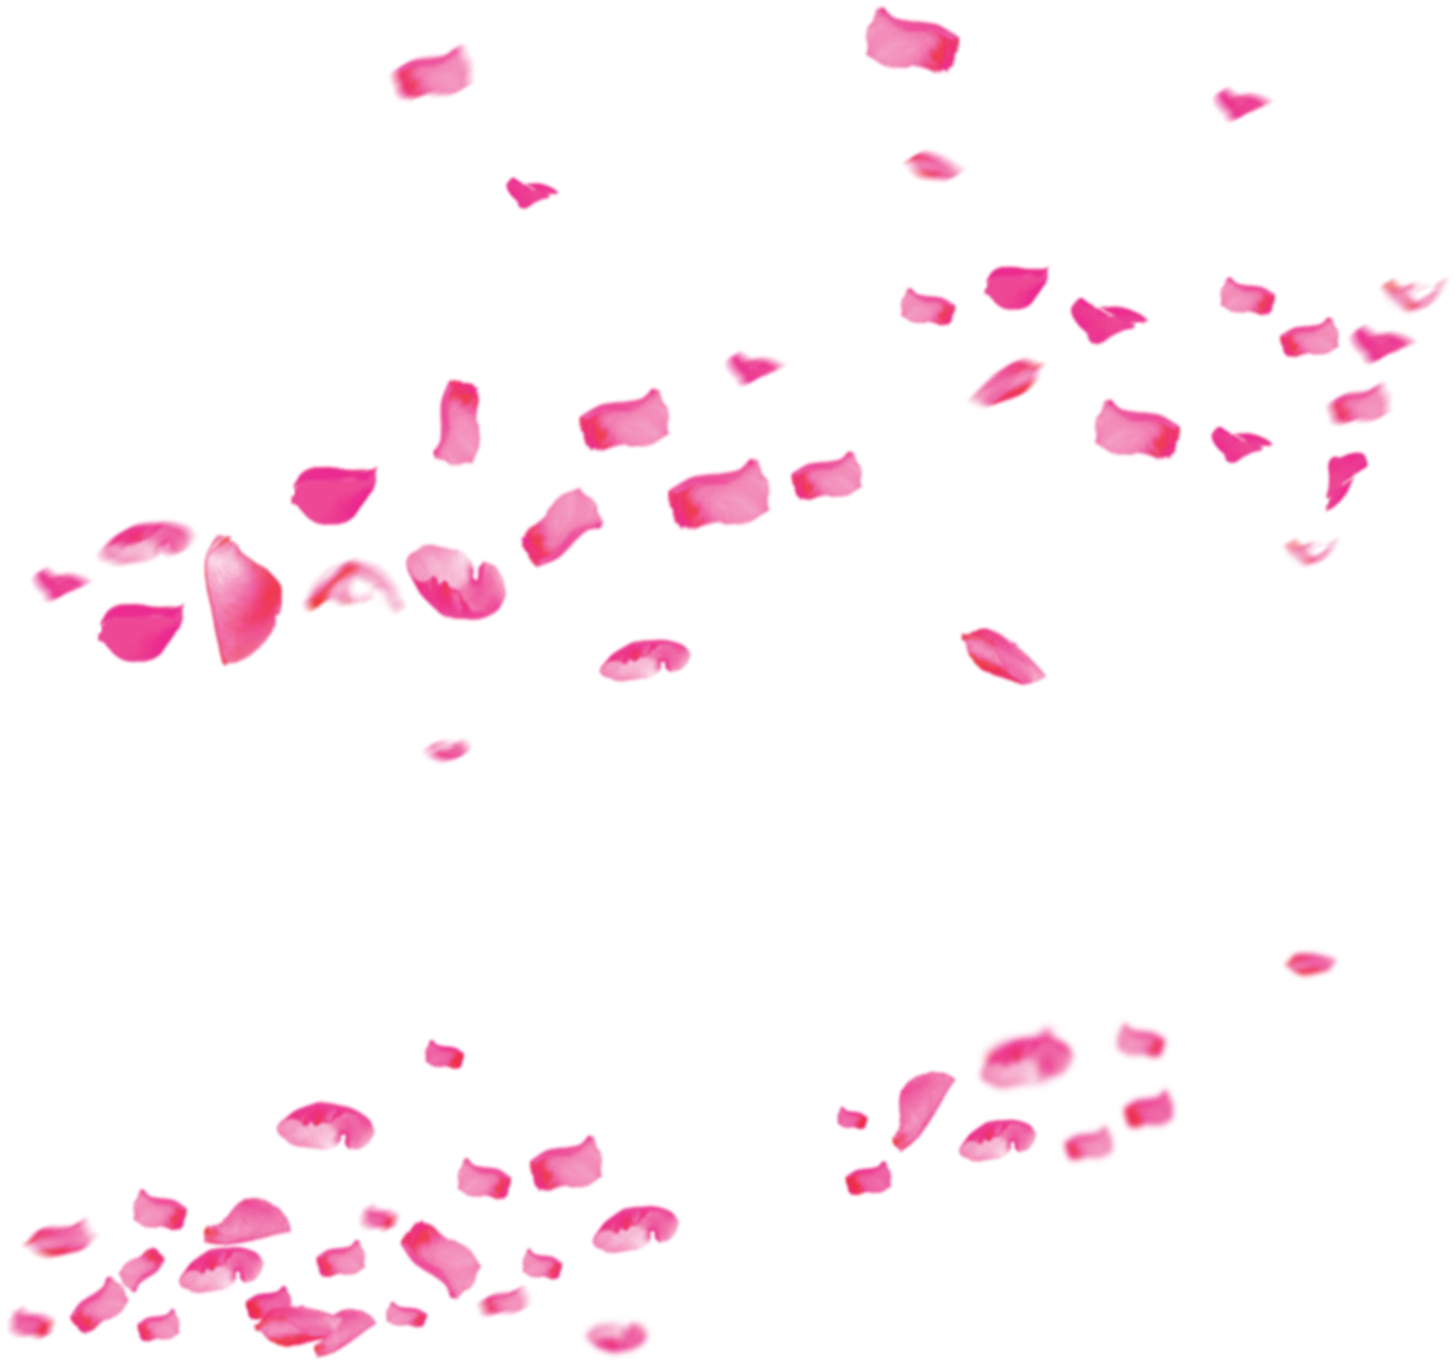 Pétalos de rosa transparente